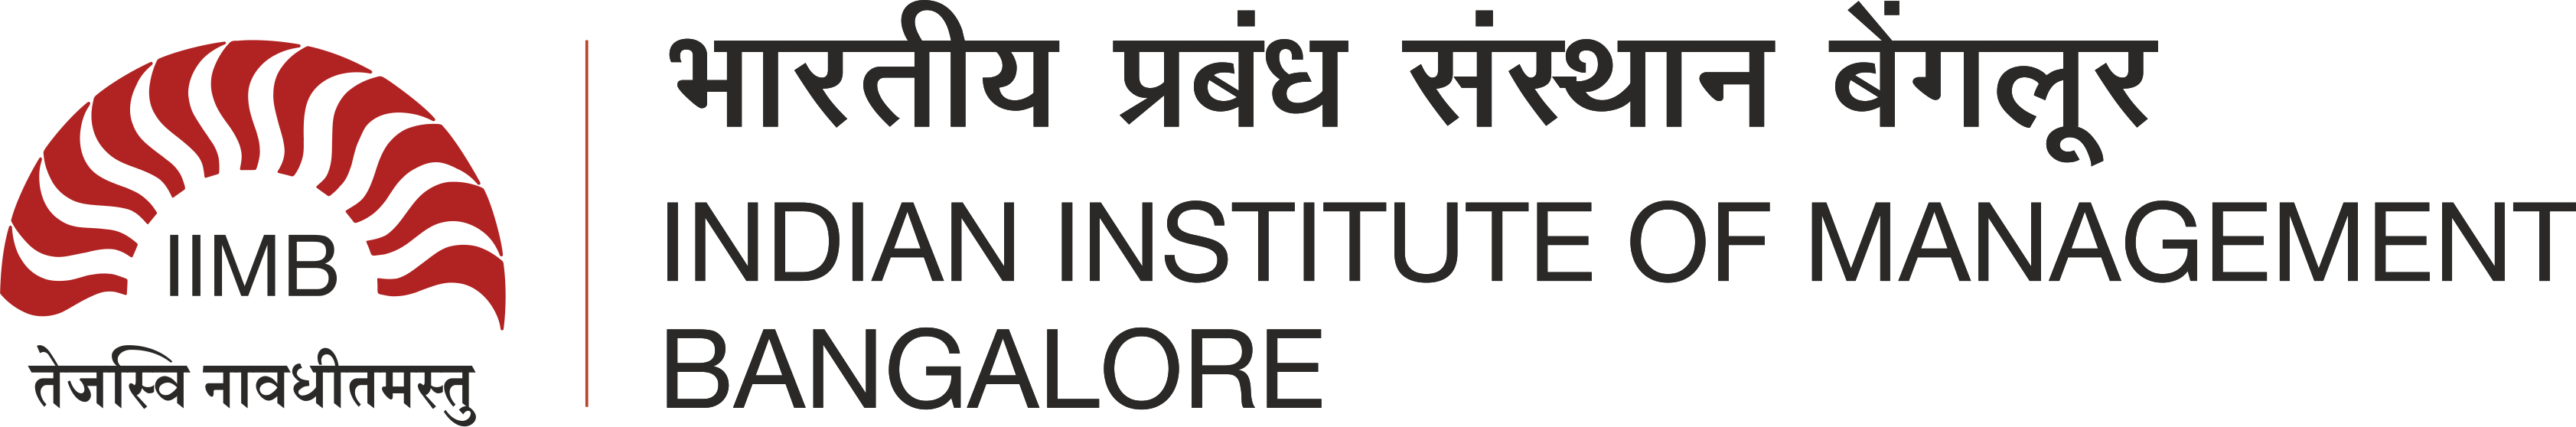 IIMB Logo